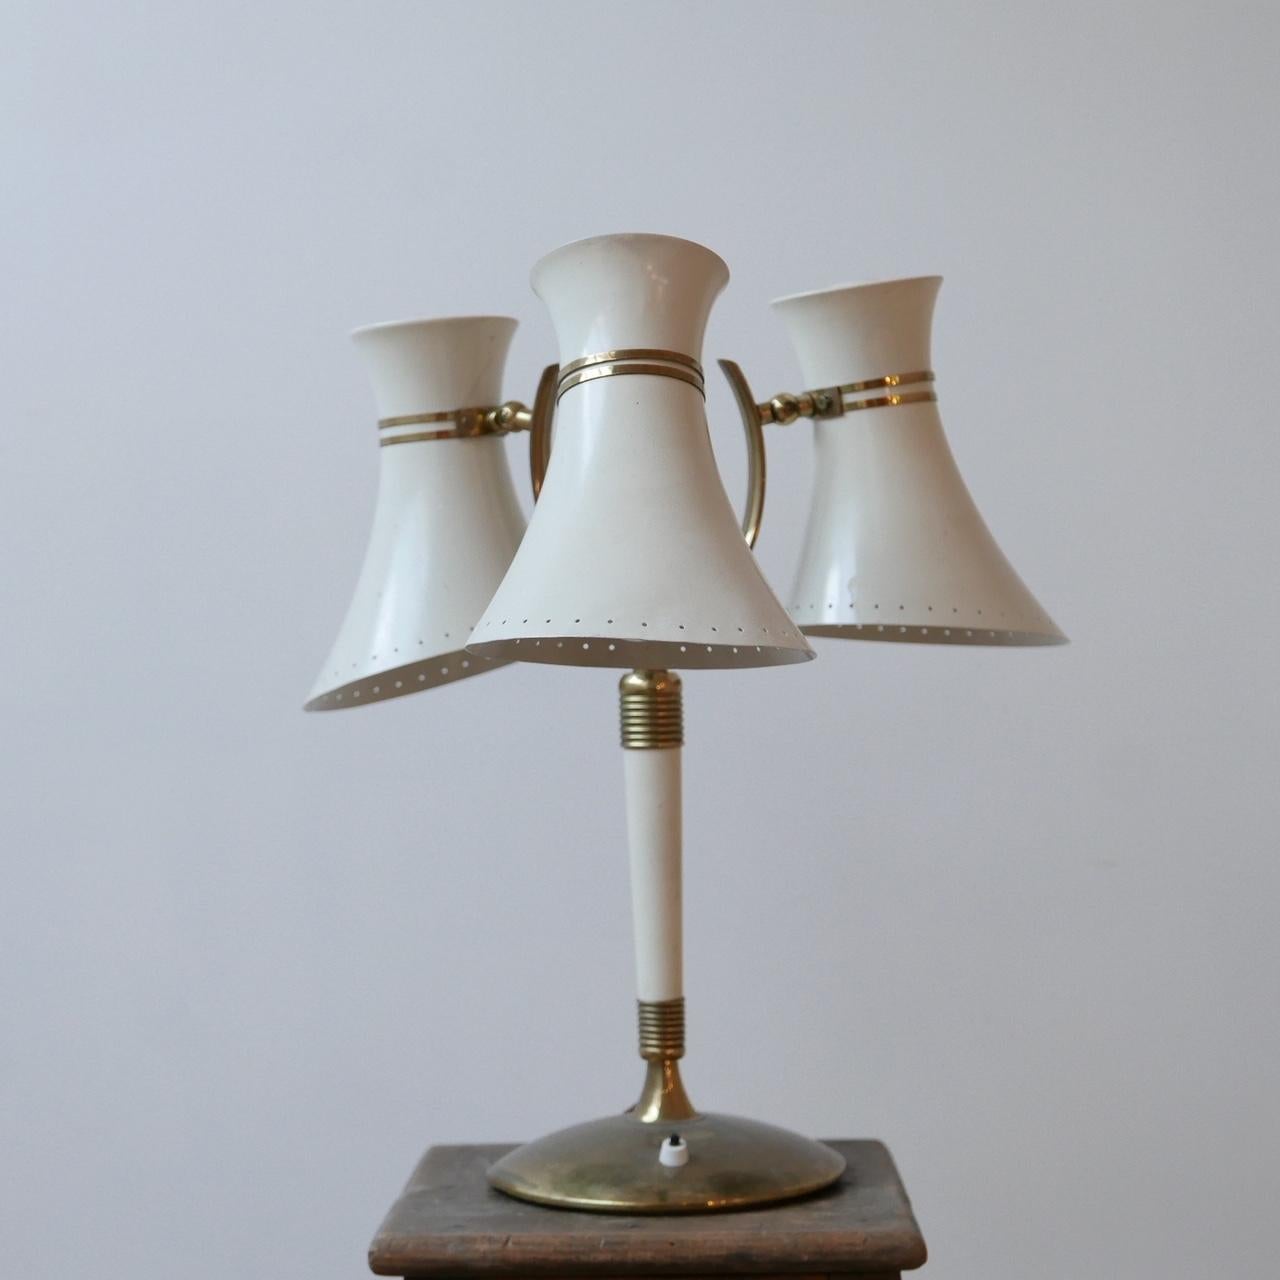 Mid-20th Century Italian Midcentury Three Shade Adjustable Table Lamp